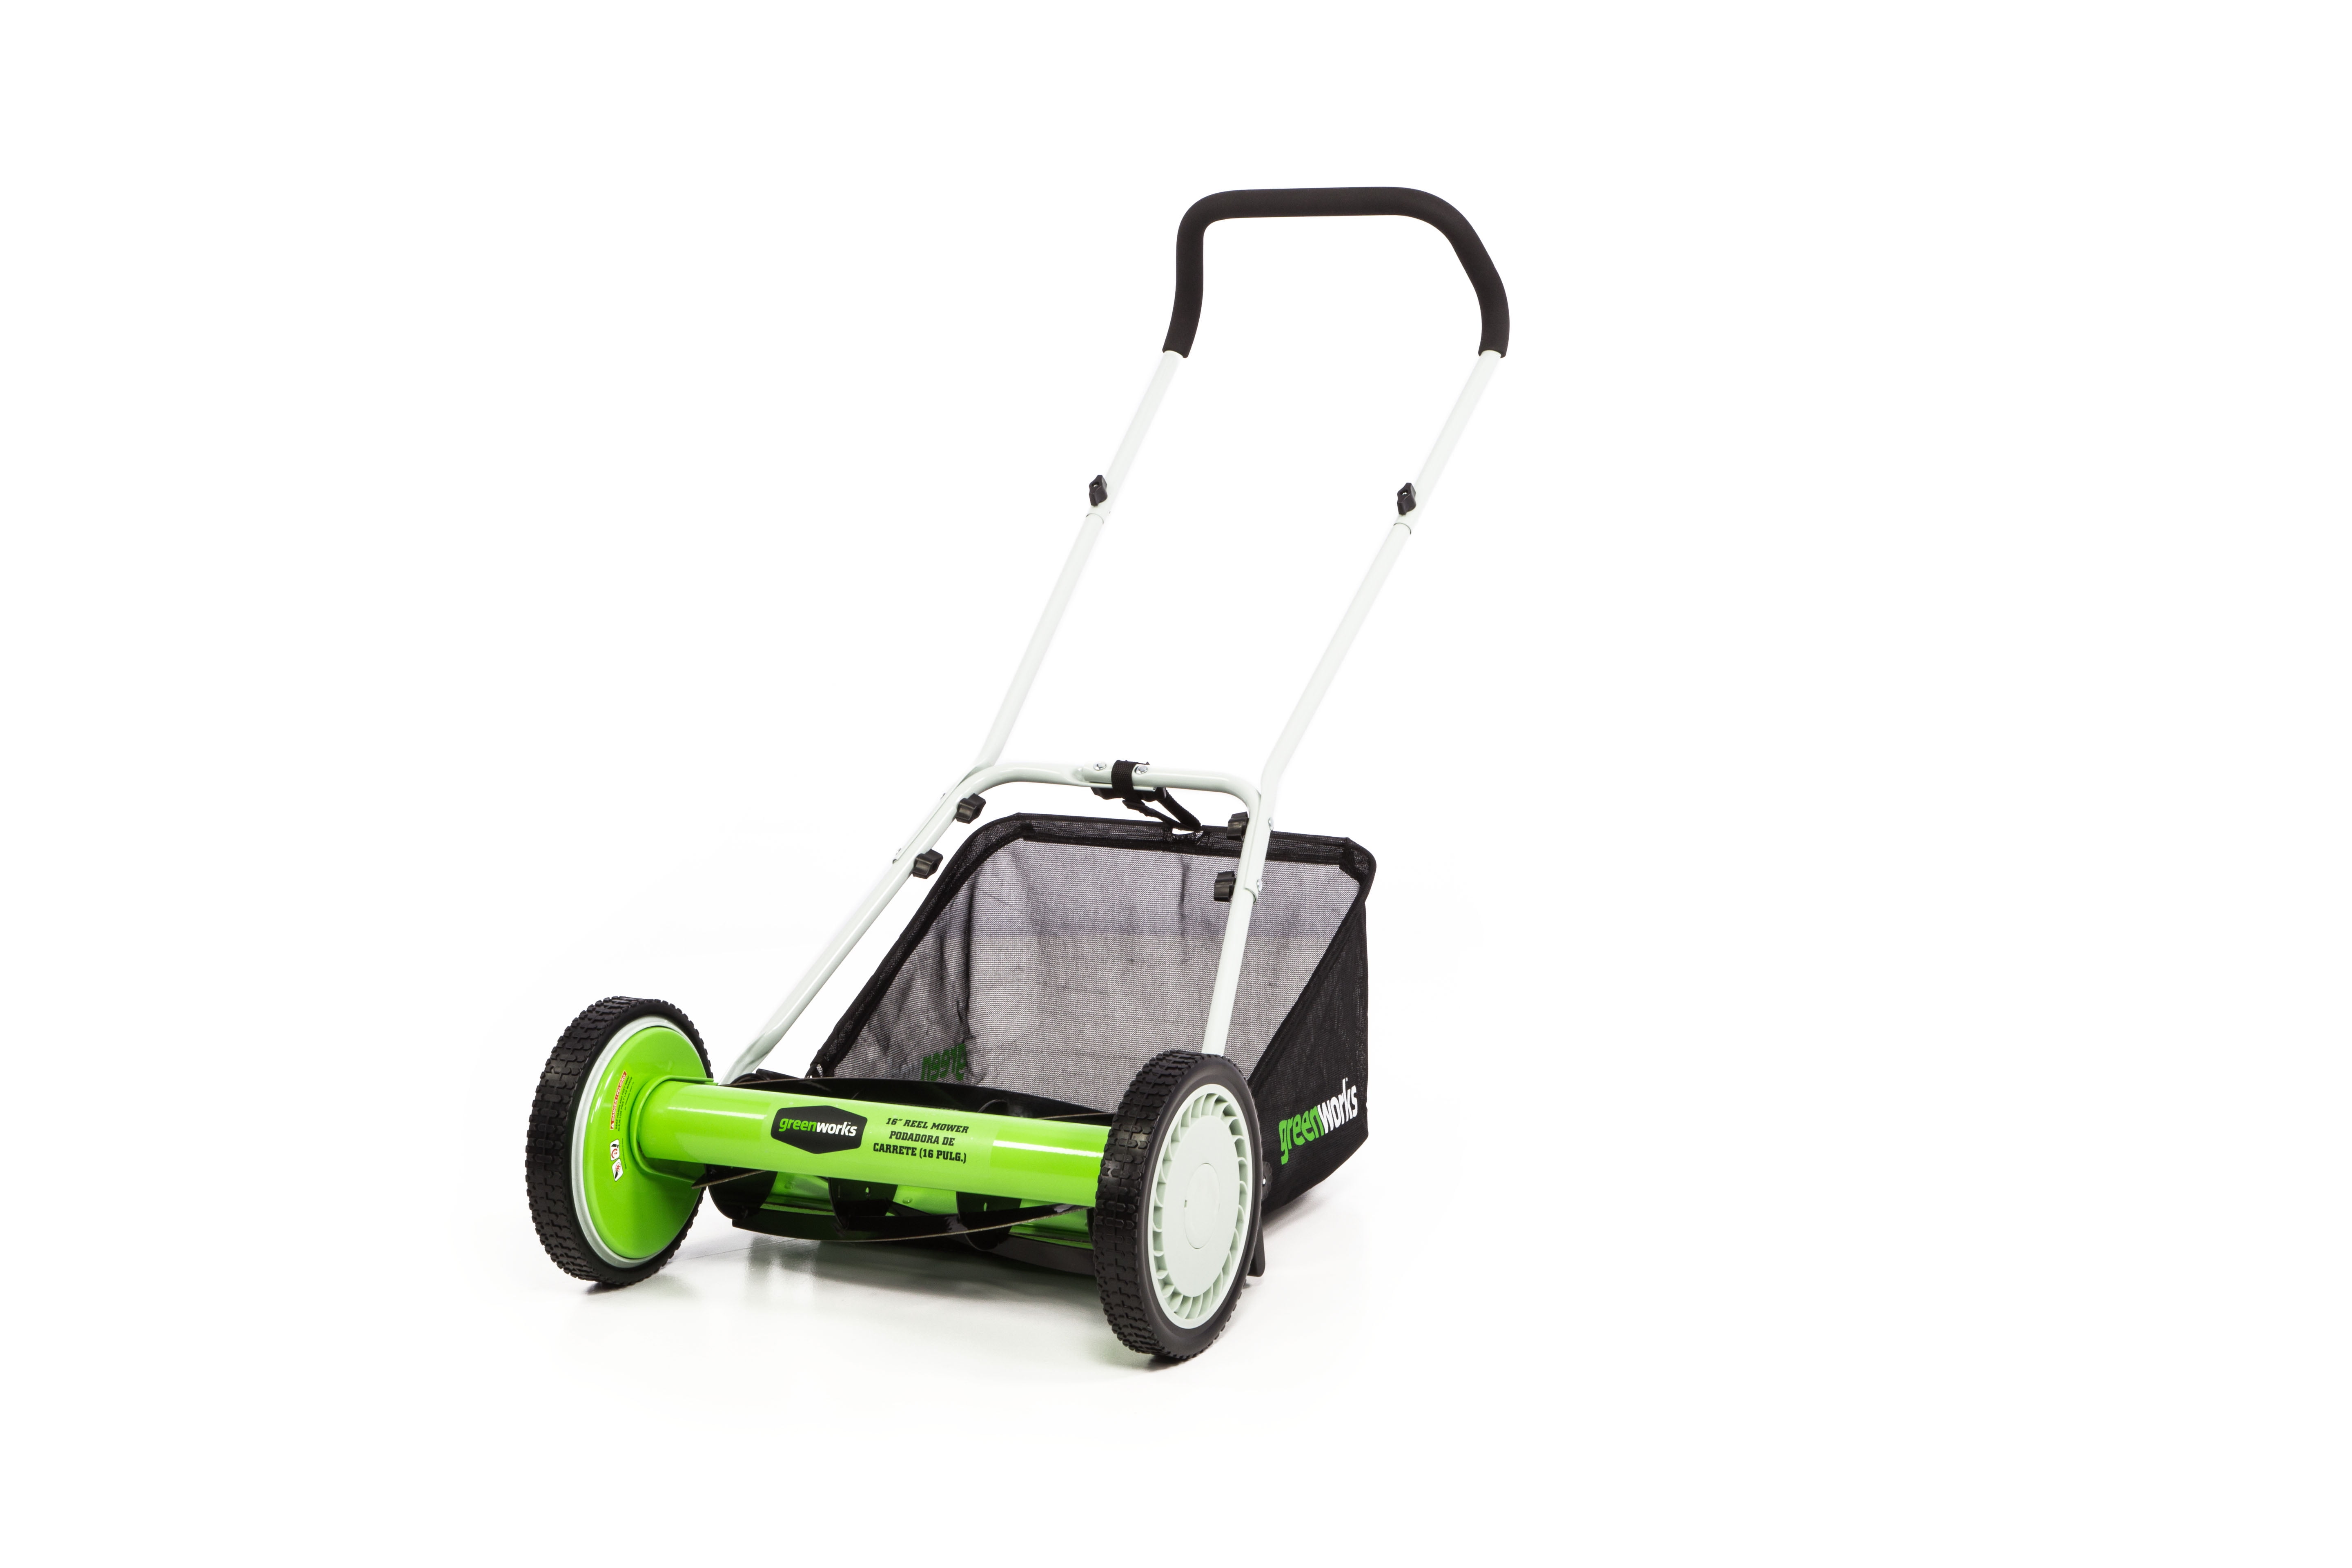 Greenworks 16-Inch Reel Lawn Mower with Grass Catcher 7 AMP Blower 1303802AZ 